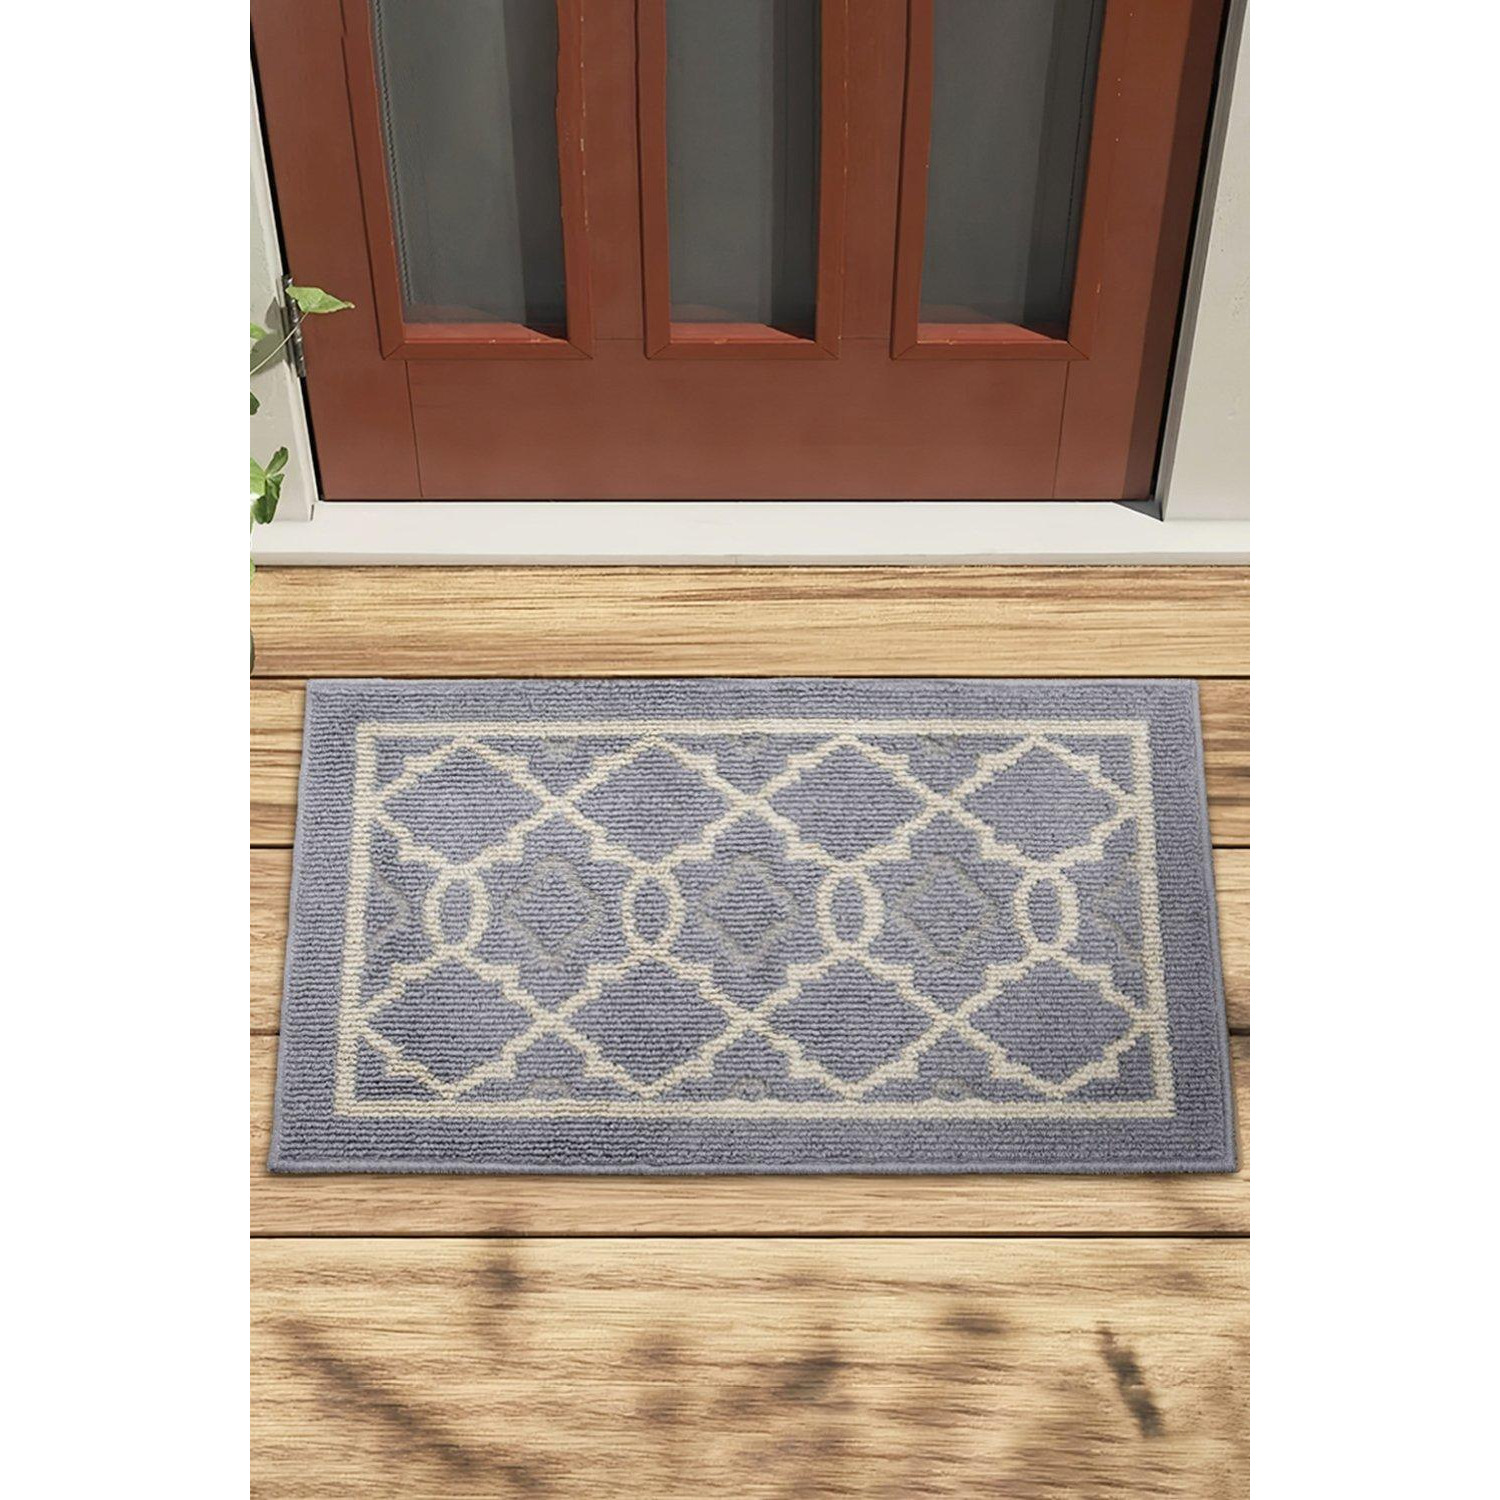 50Cm*80Cm Geometric Patterned Non-Slip Entrance Doormat - image 1